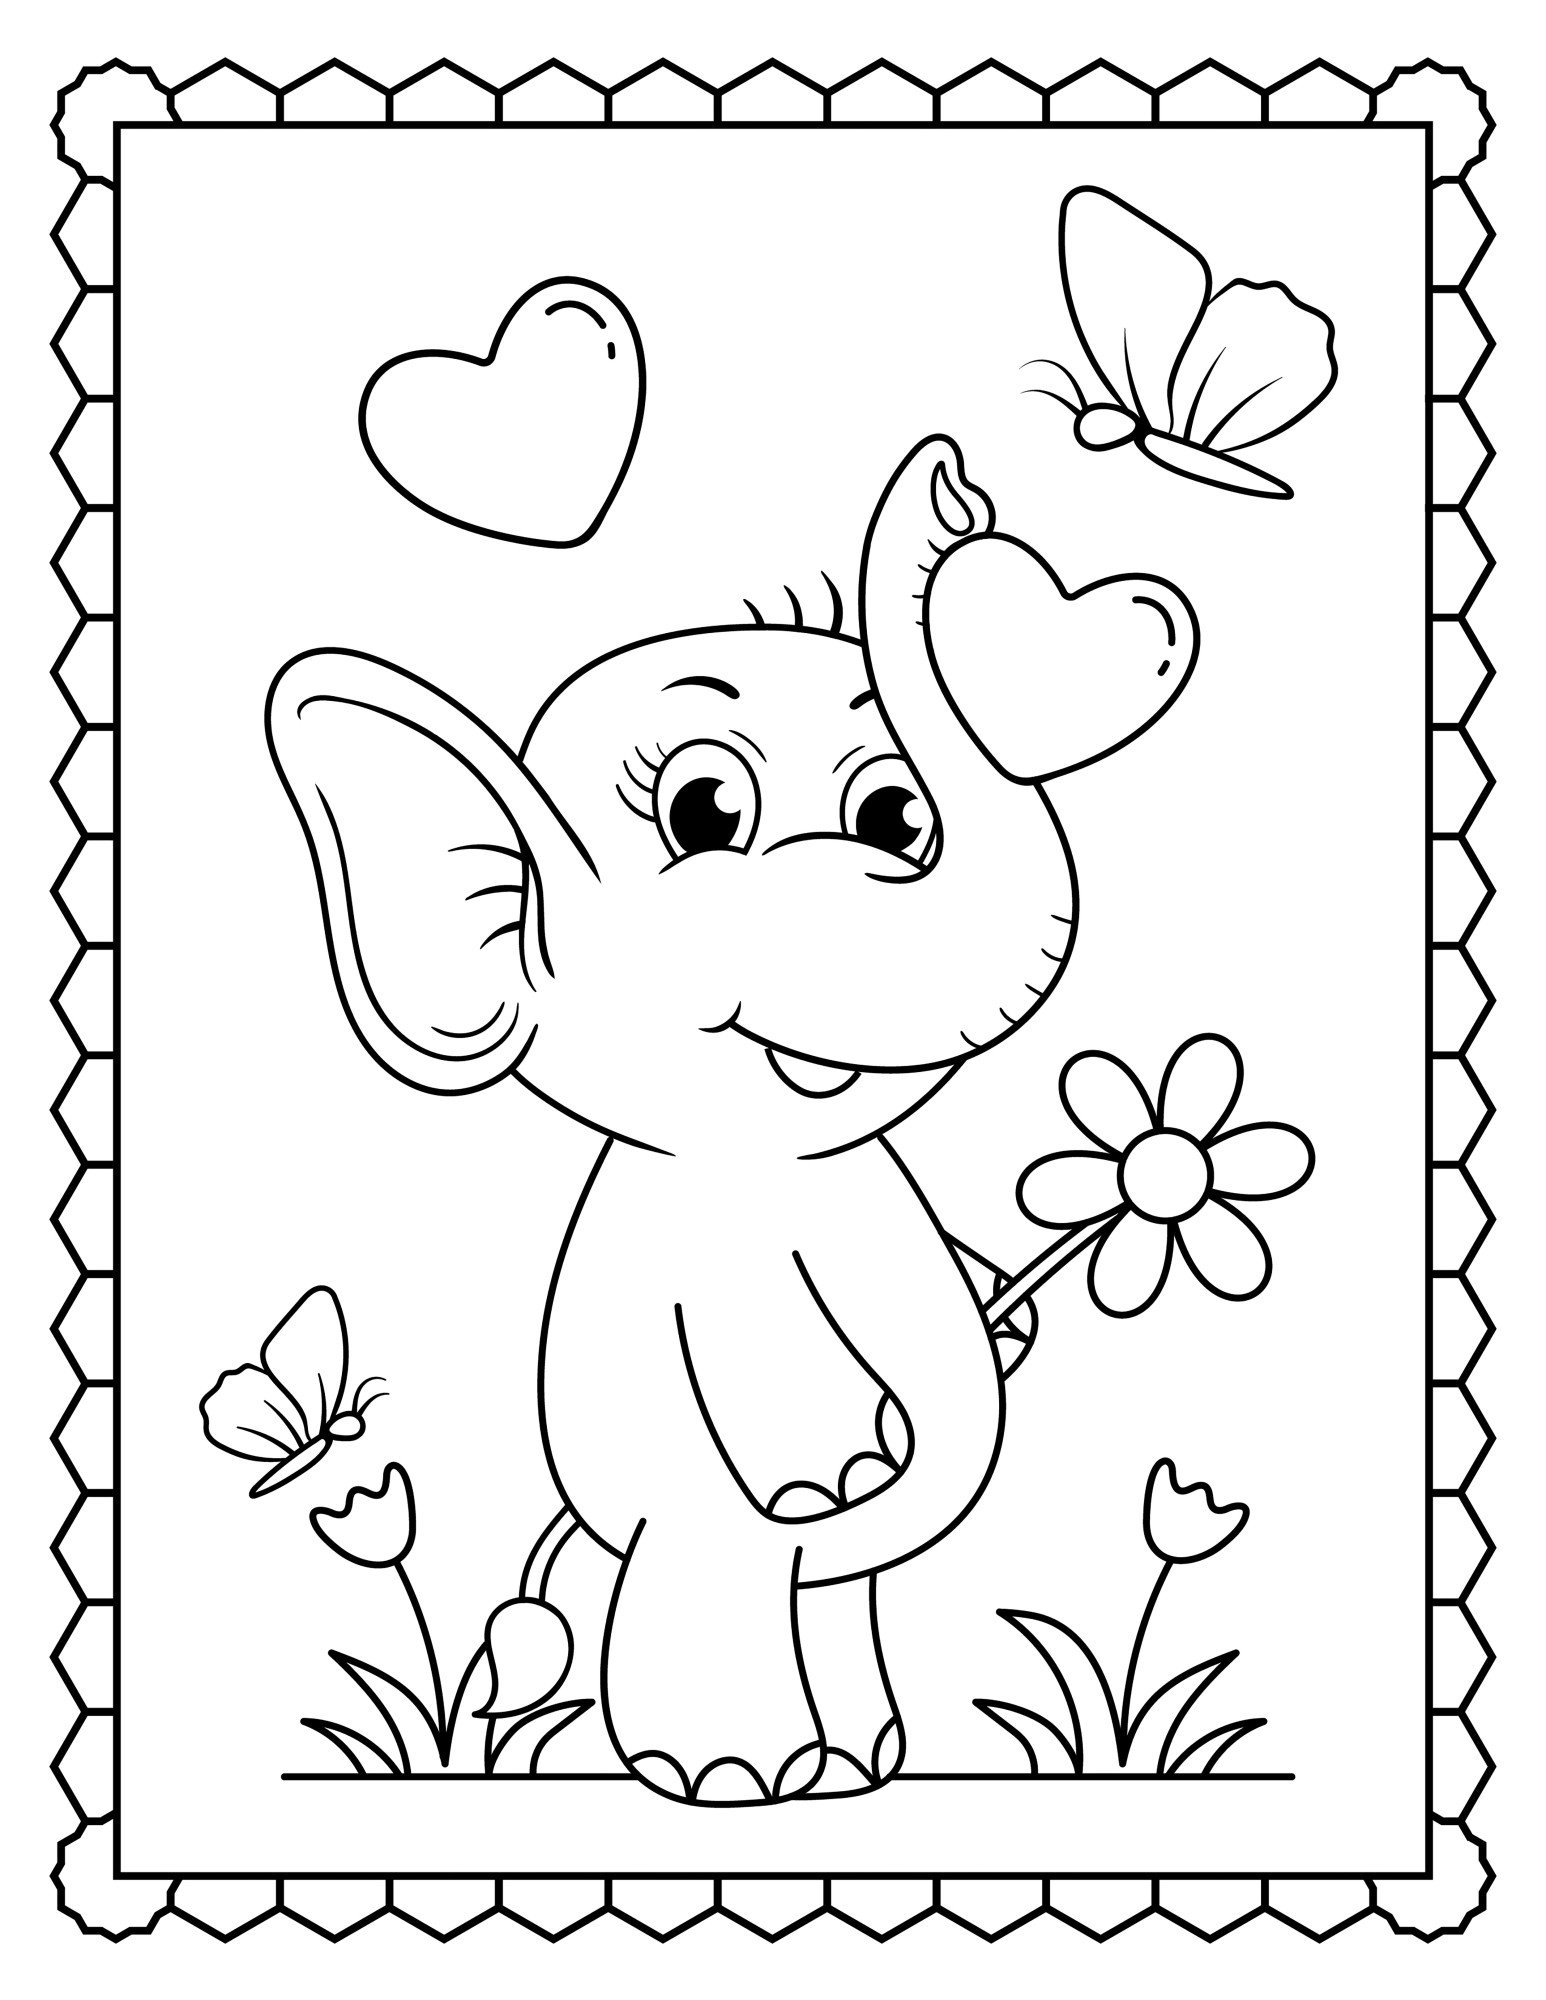 Раскраска для детей: бабочка и слон в поле